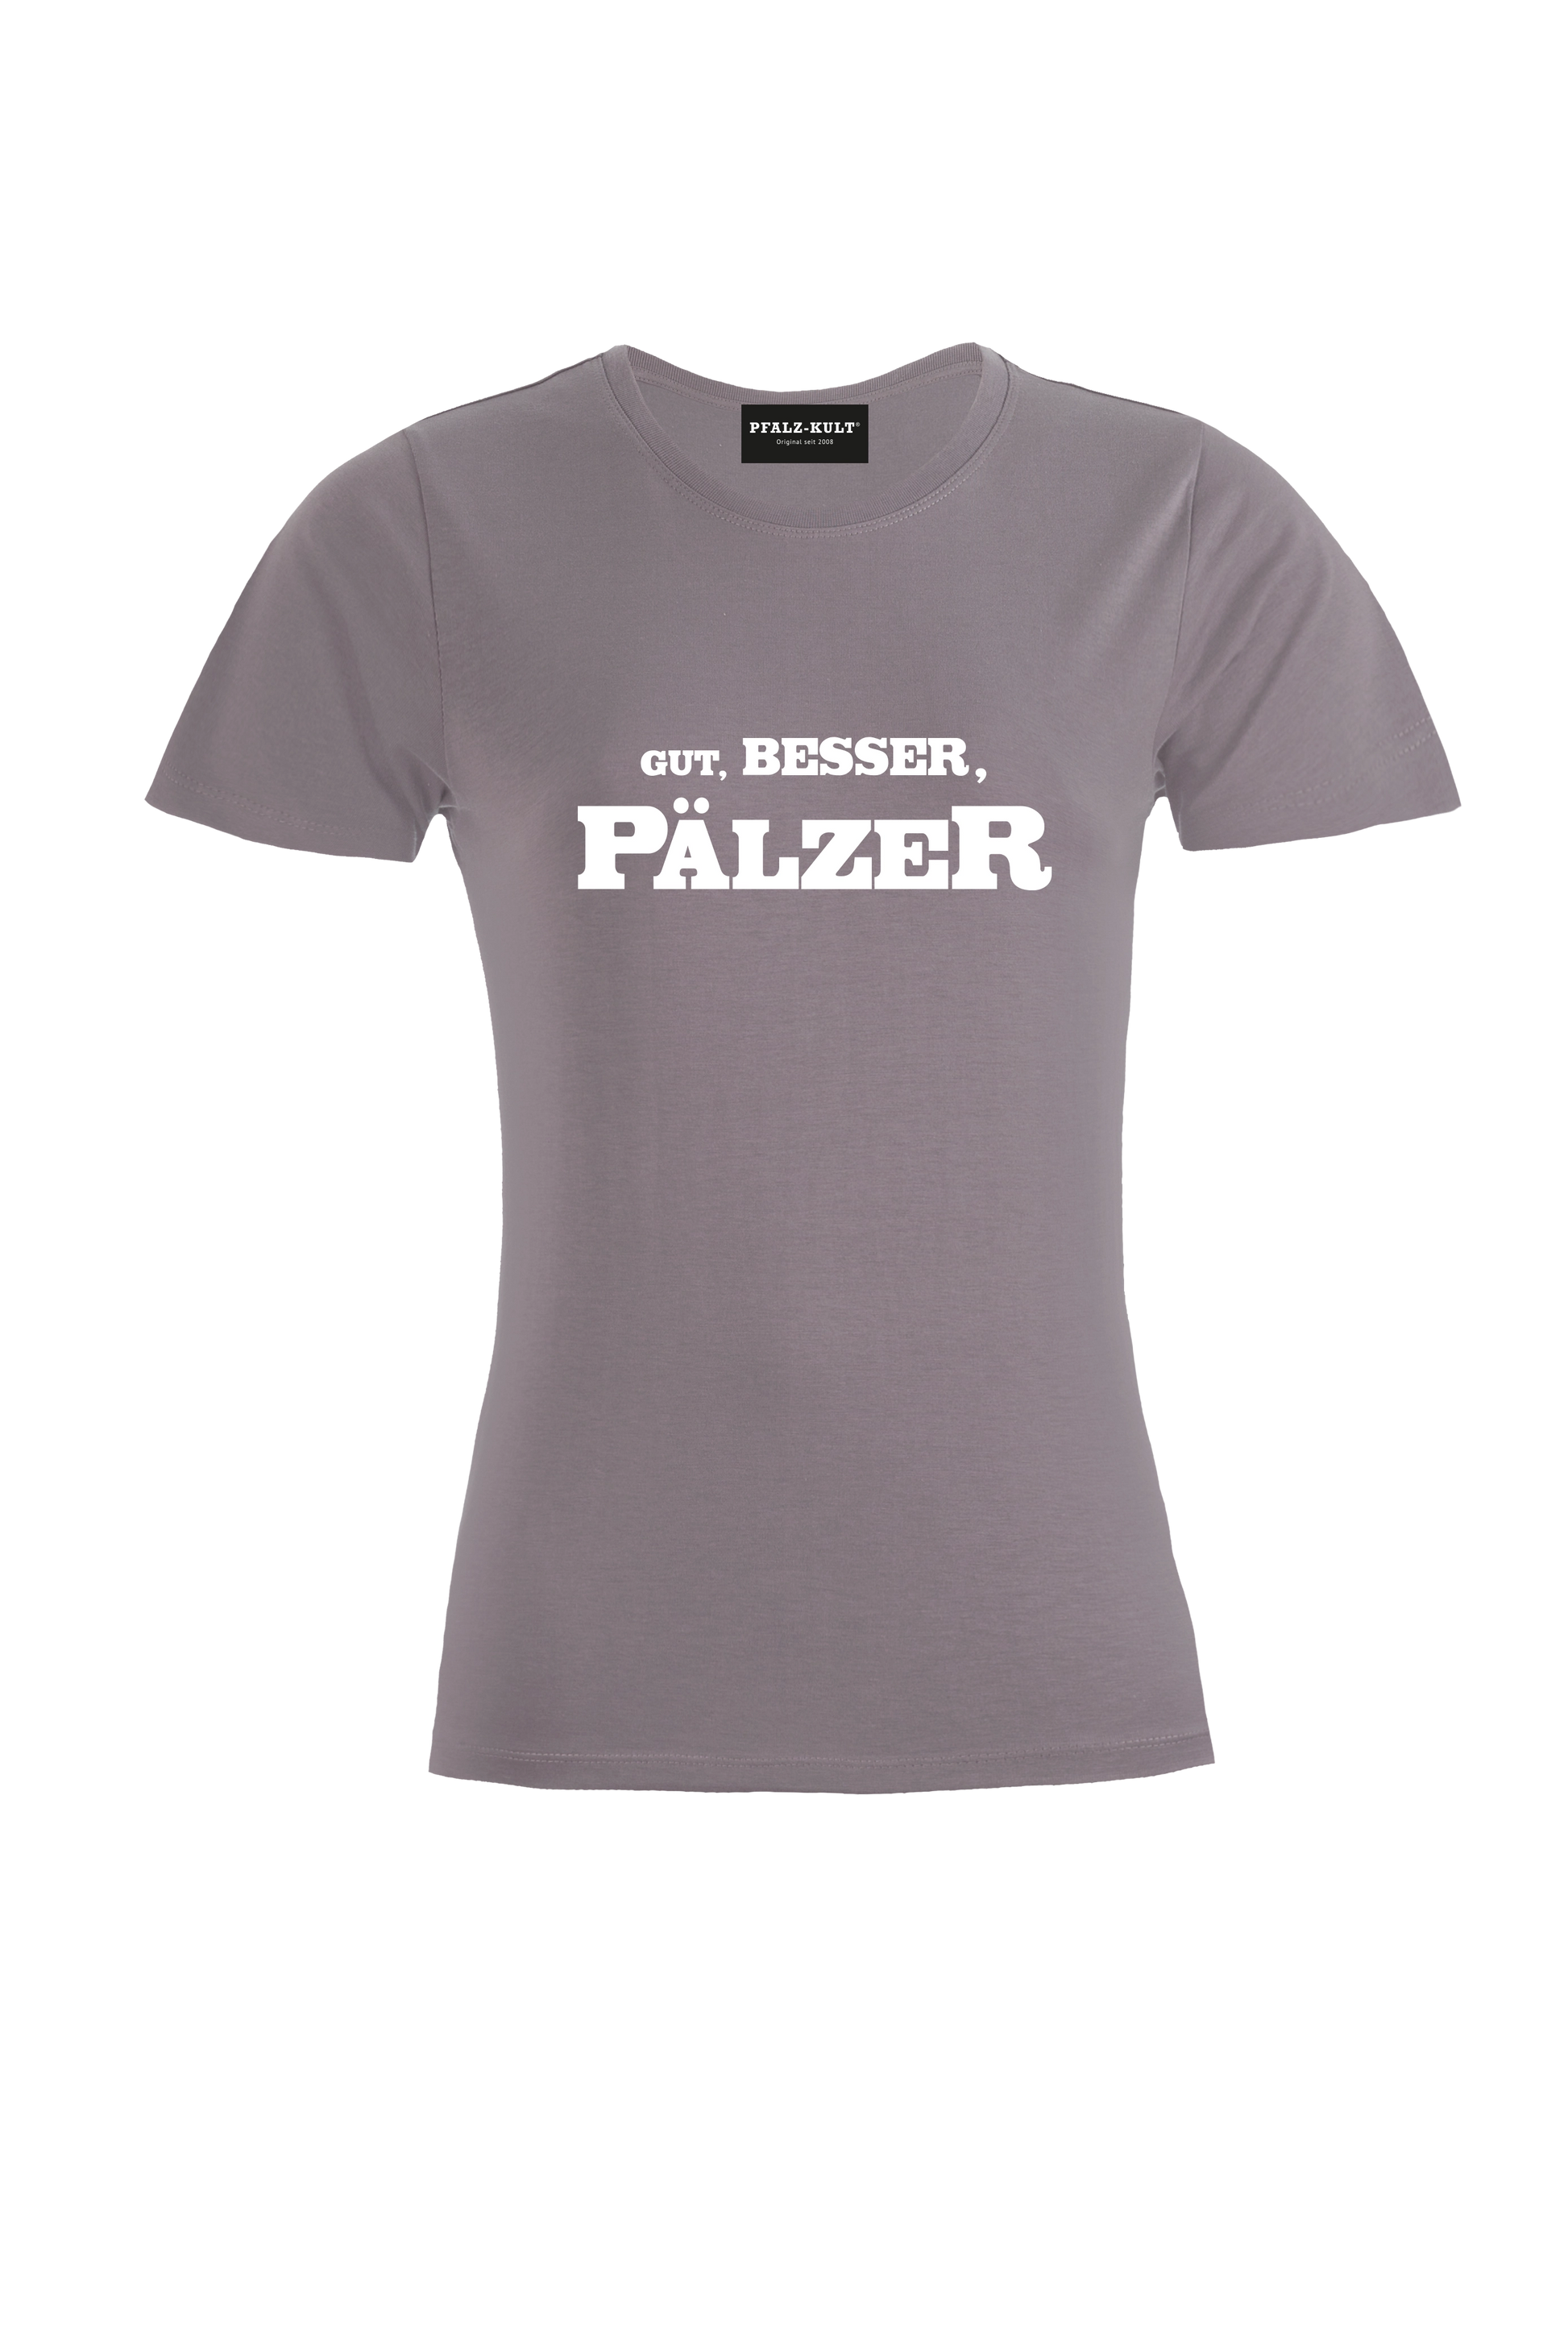 Gut, besser, Pälzer Damen T-Shirt in grau. Geschenkidee auf pfälzisch von Pfalz-Kult aus DÜW